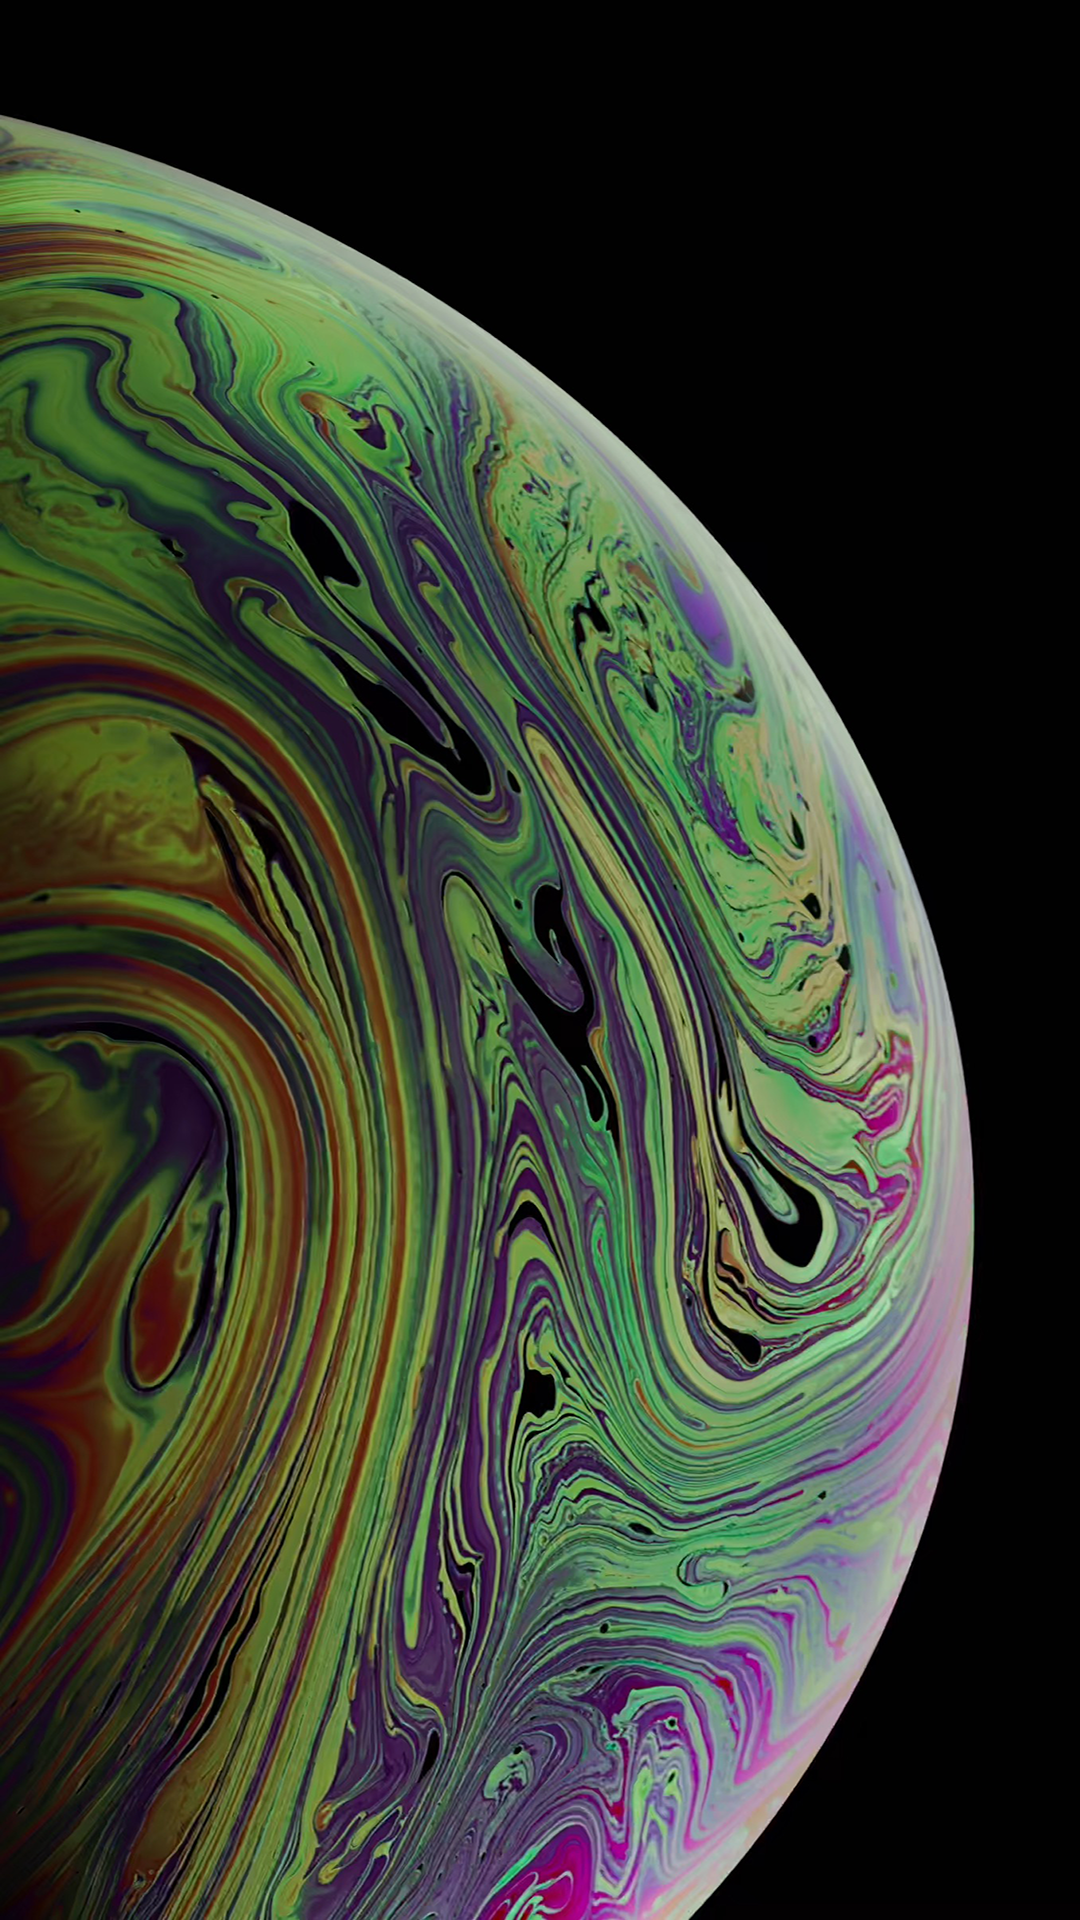 Bạn đang tìm kiếm một hình nền độc đáo và ấn tượng cho iPhone XS Max của mình? Vậy thì hãy lựa chọn trong bộ sưu tập IPhone XS Max Earth Wallpapers với những hình ảnh đẹp như tranh vẽ về các tầng lớp khí quyển, danh thắng thiên nhiên và những khung cảnh kỳ lạ của Trái Đất. 